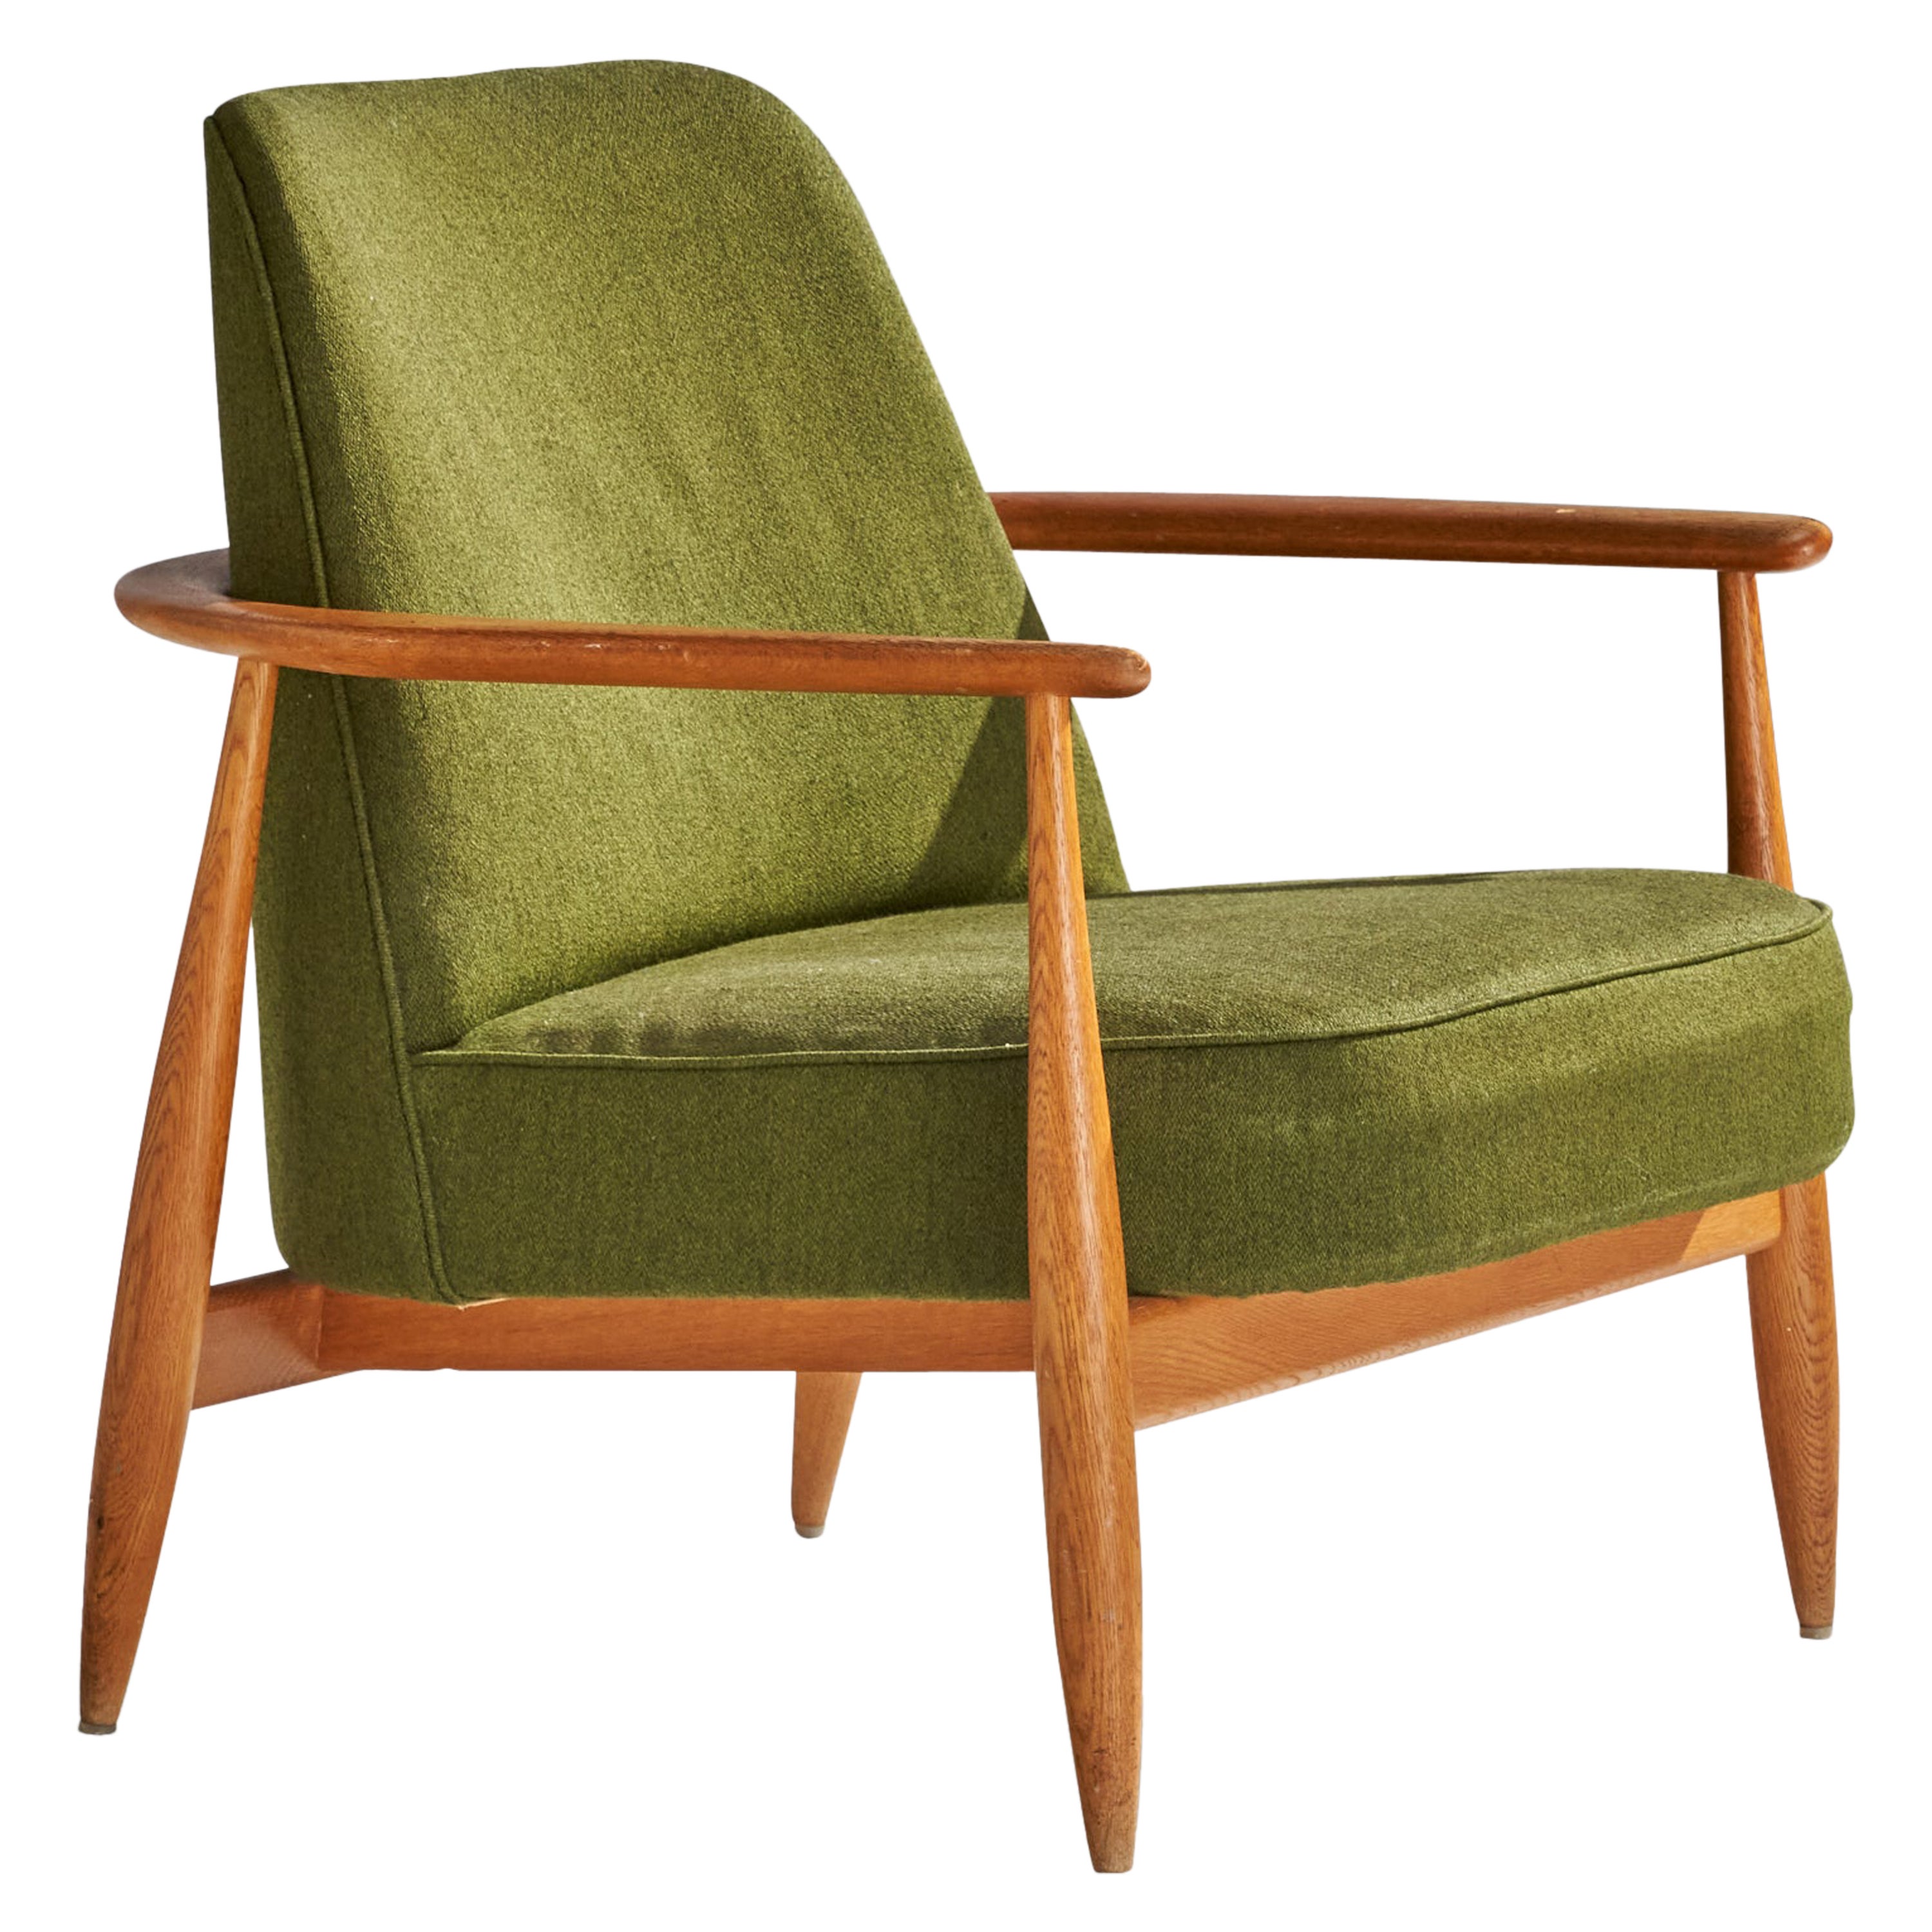 Designer suédois, chaise longue, chêne, tissu, Suède, années 1950